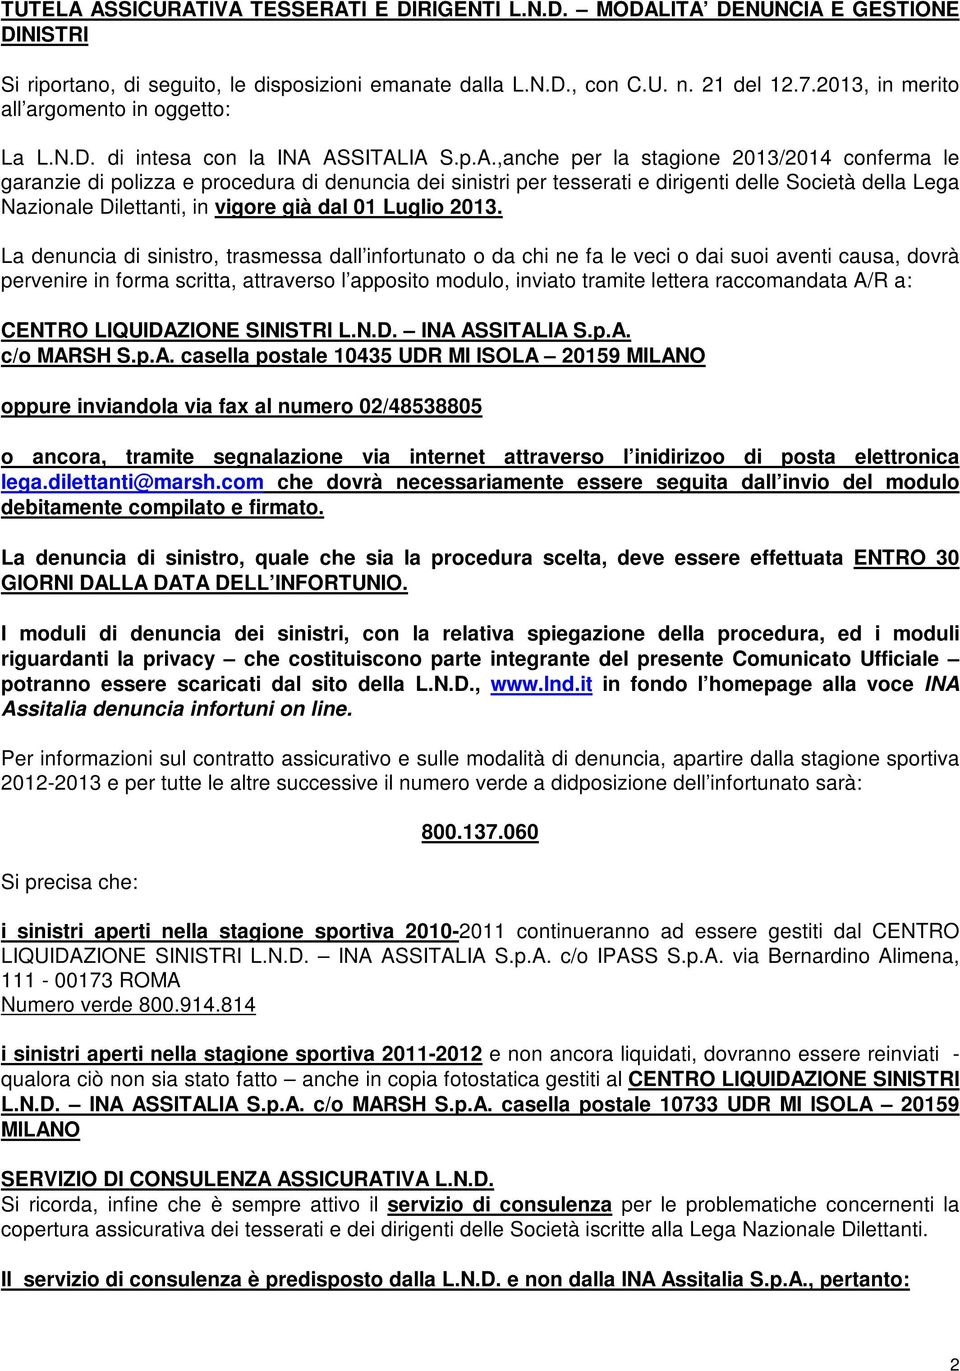 ASSITALIA S.p.A.,anche per la stagione 2013/2014 conferma le garanzie di polizza e procedura di denuncia dei sinistri per tesserati e dirigenti delle Società della Lega Nazionale Dilettanti, in